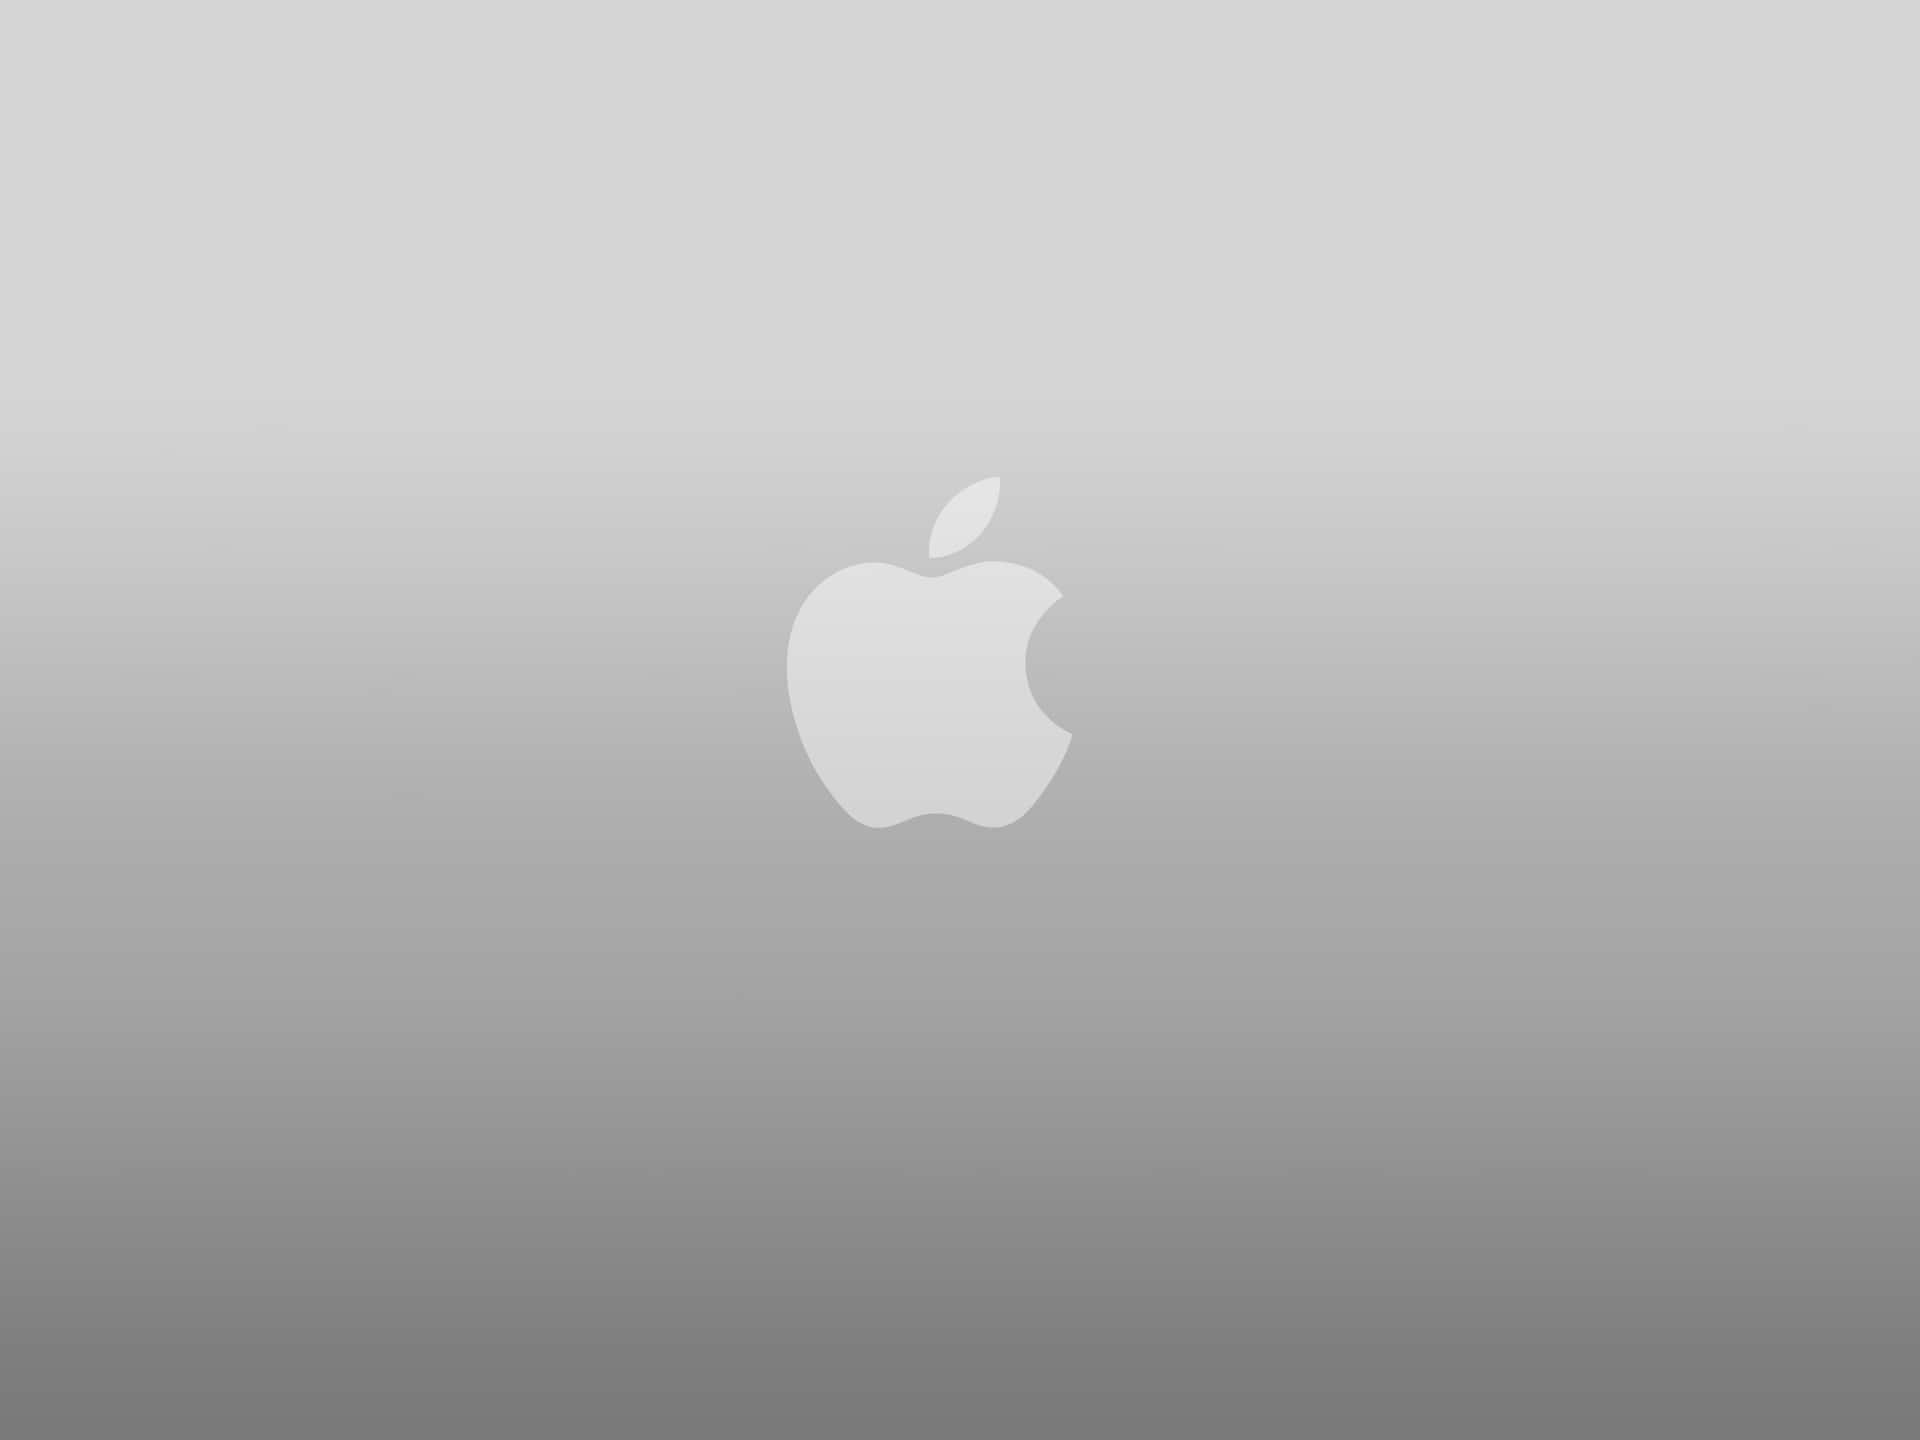 Denikoniska Apple-logotypen Visas På Den Nya Iphone X-skrivbilden. Wallpaper